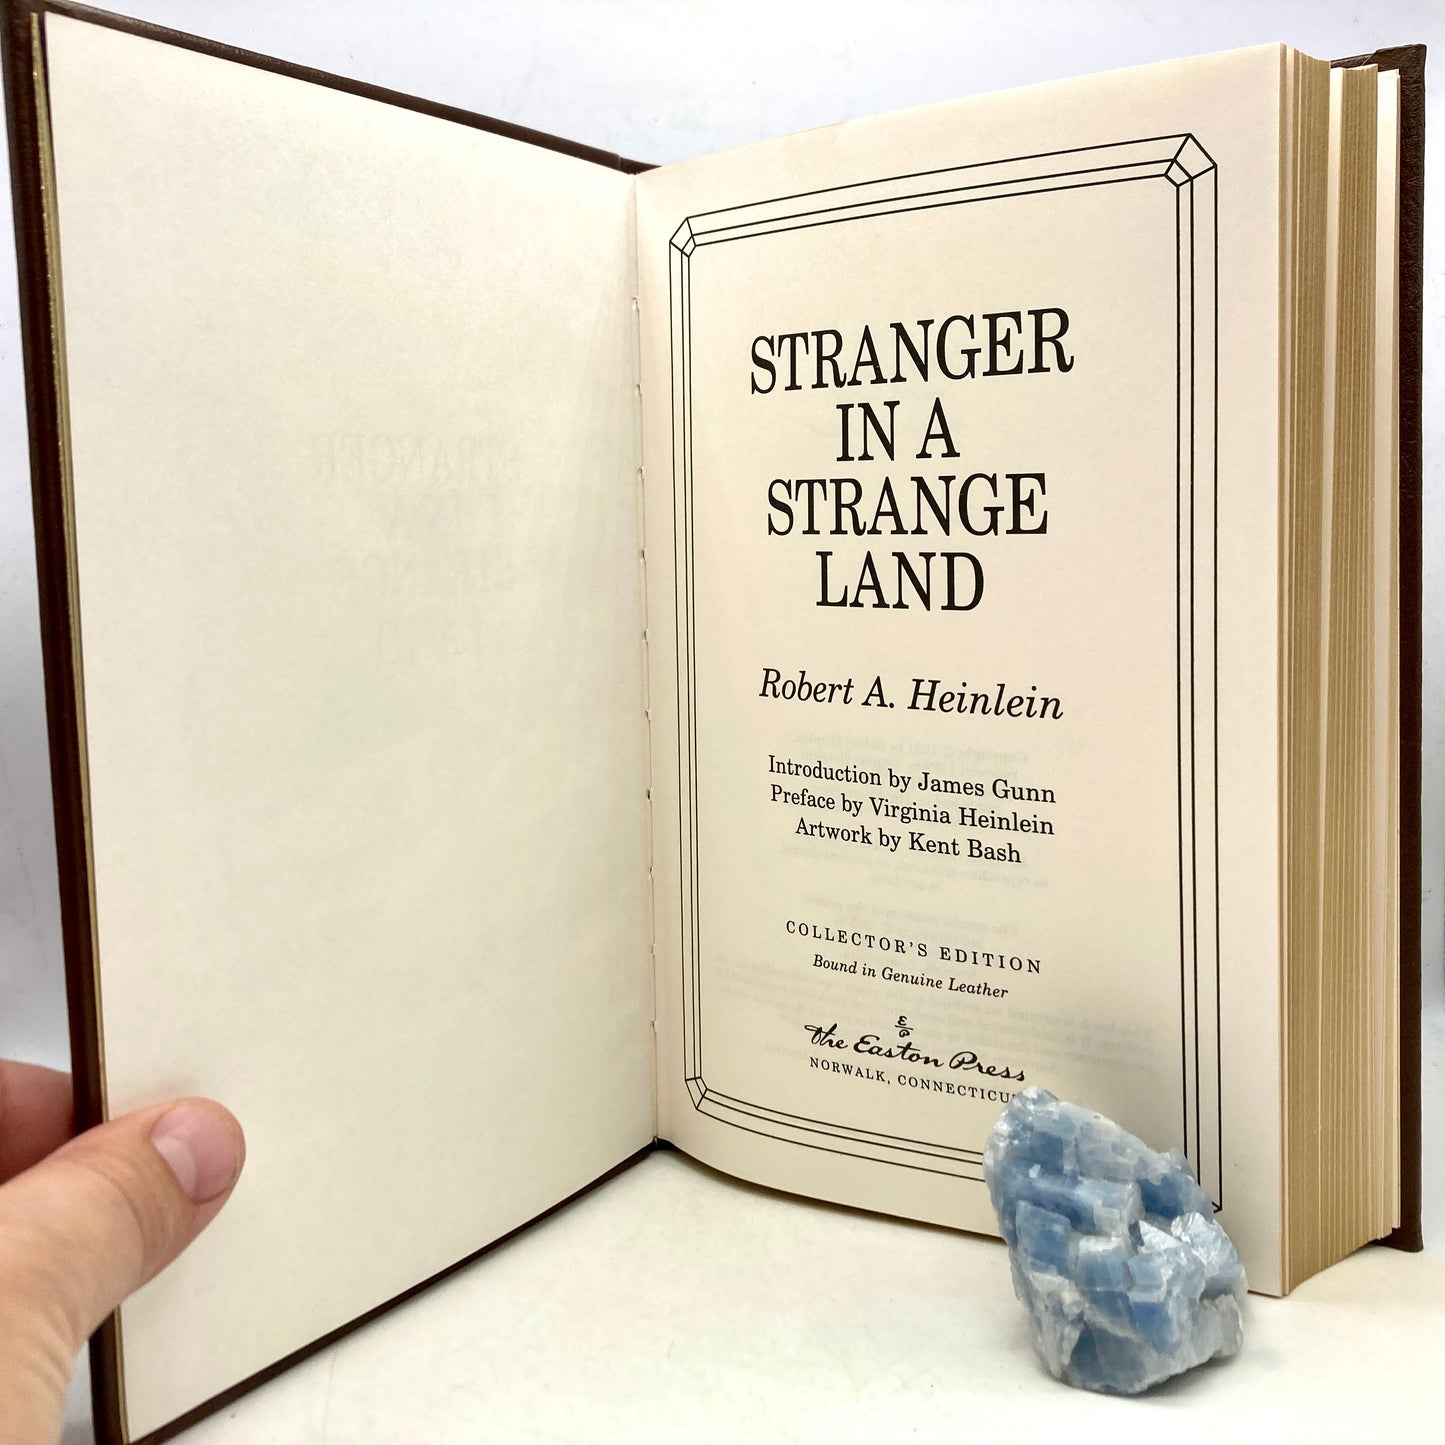 HEINLEIN, Robert "Stranger in a Strange Land" [Easton Press, 1995]